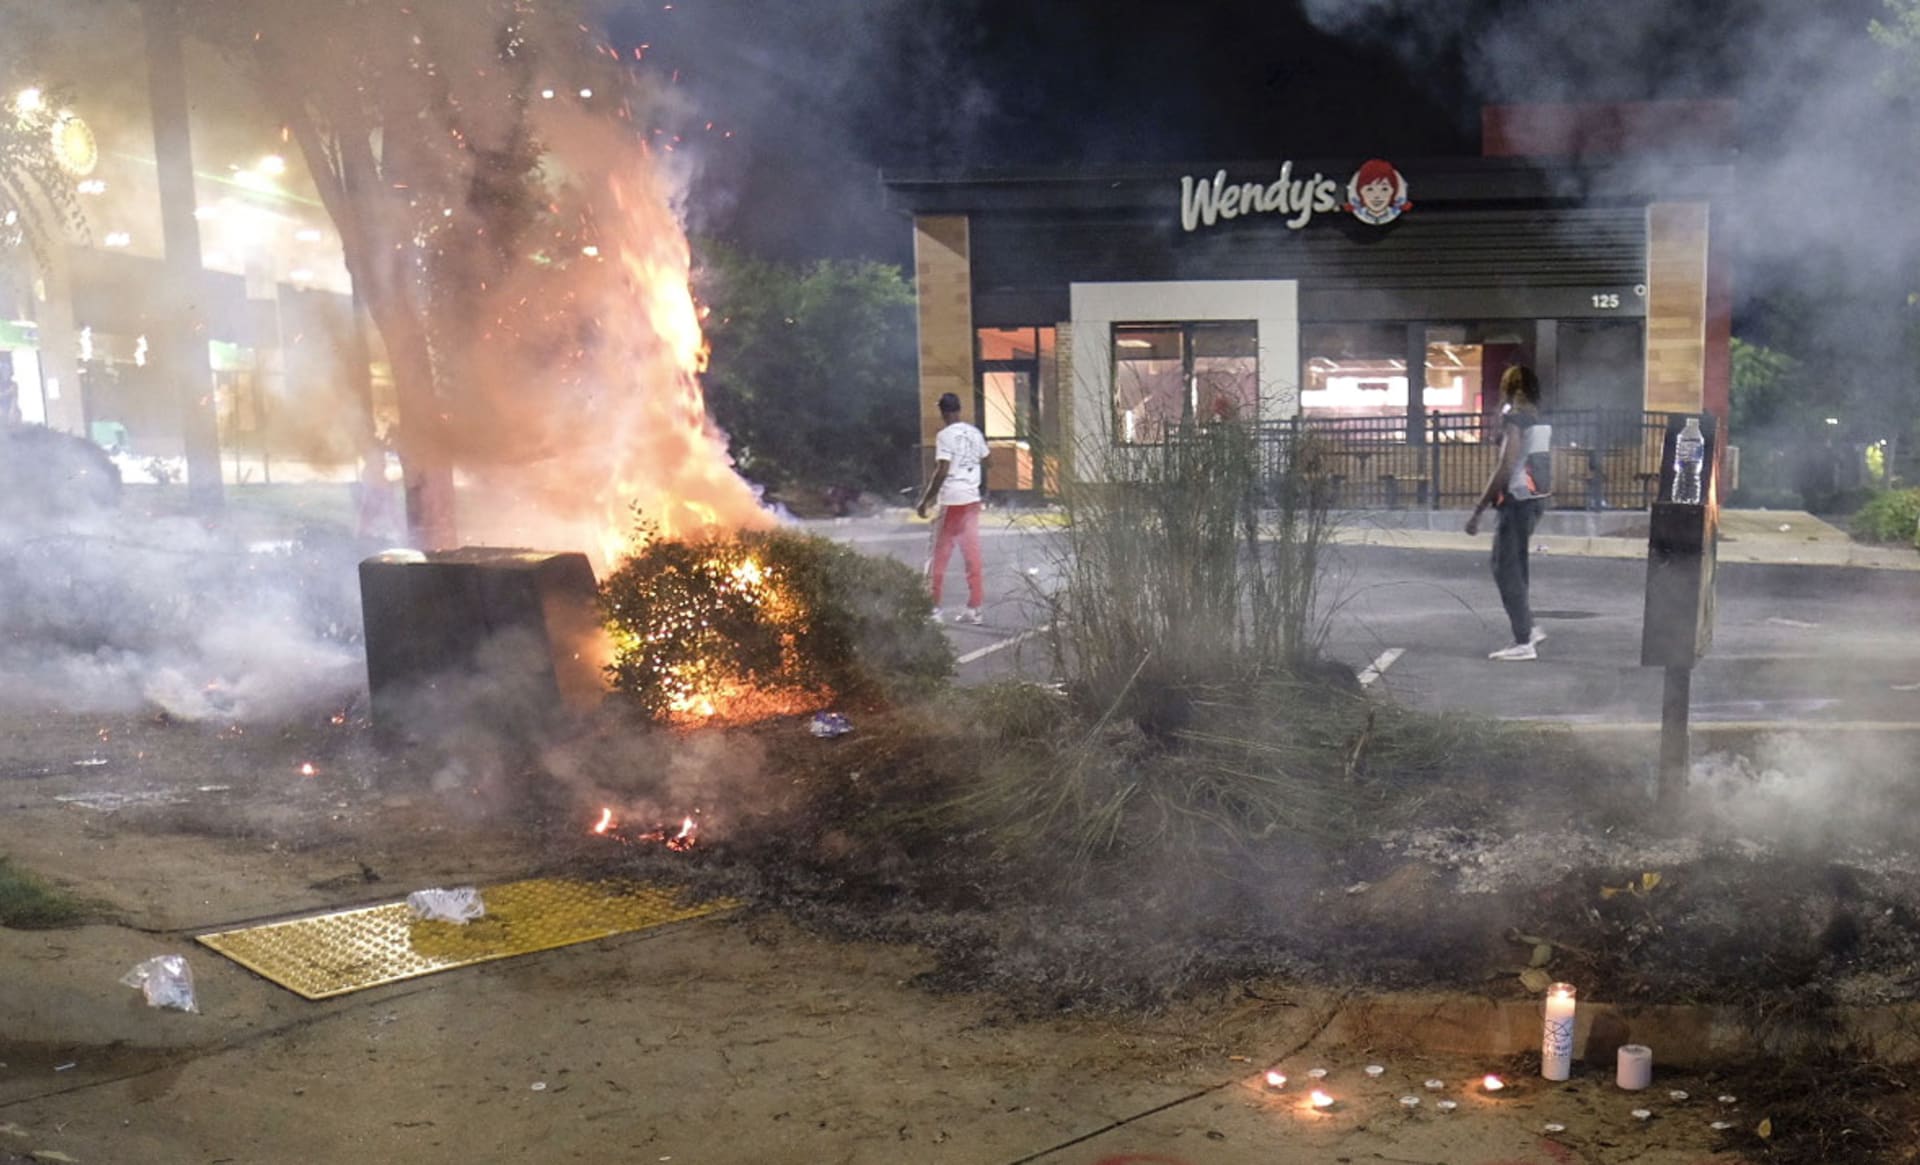 Demonstranti zapálili restauraci rychlého občerstvení, kde policie měla zastřelit dalšího Afroameričana.